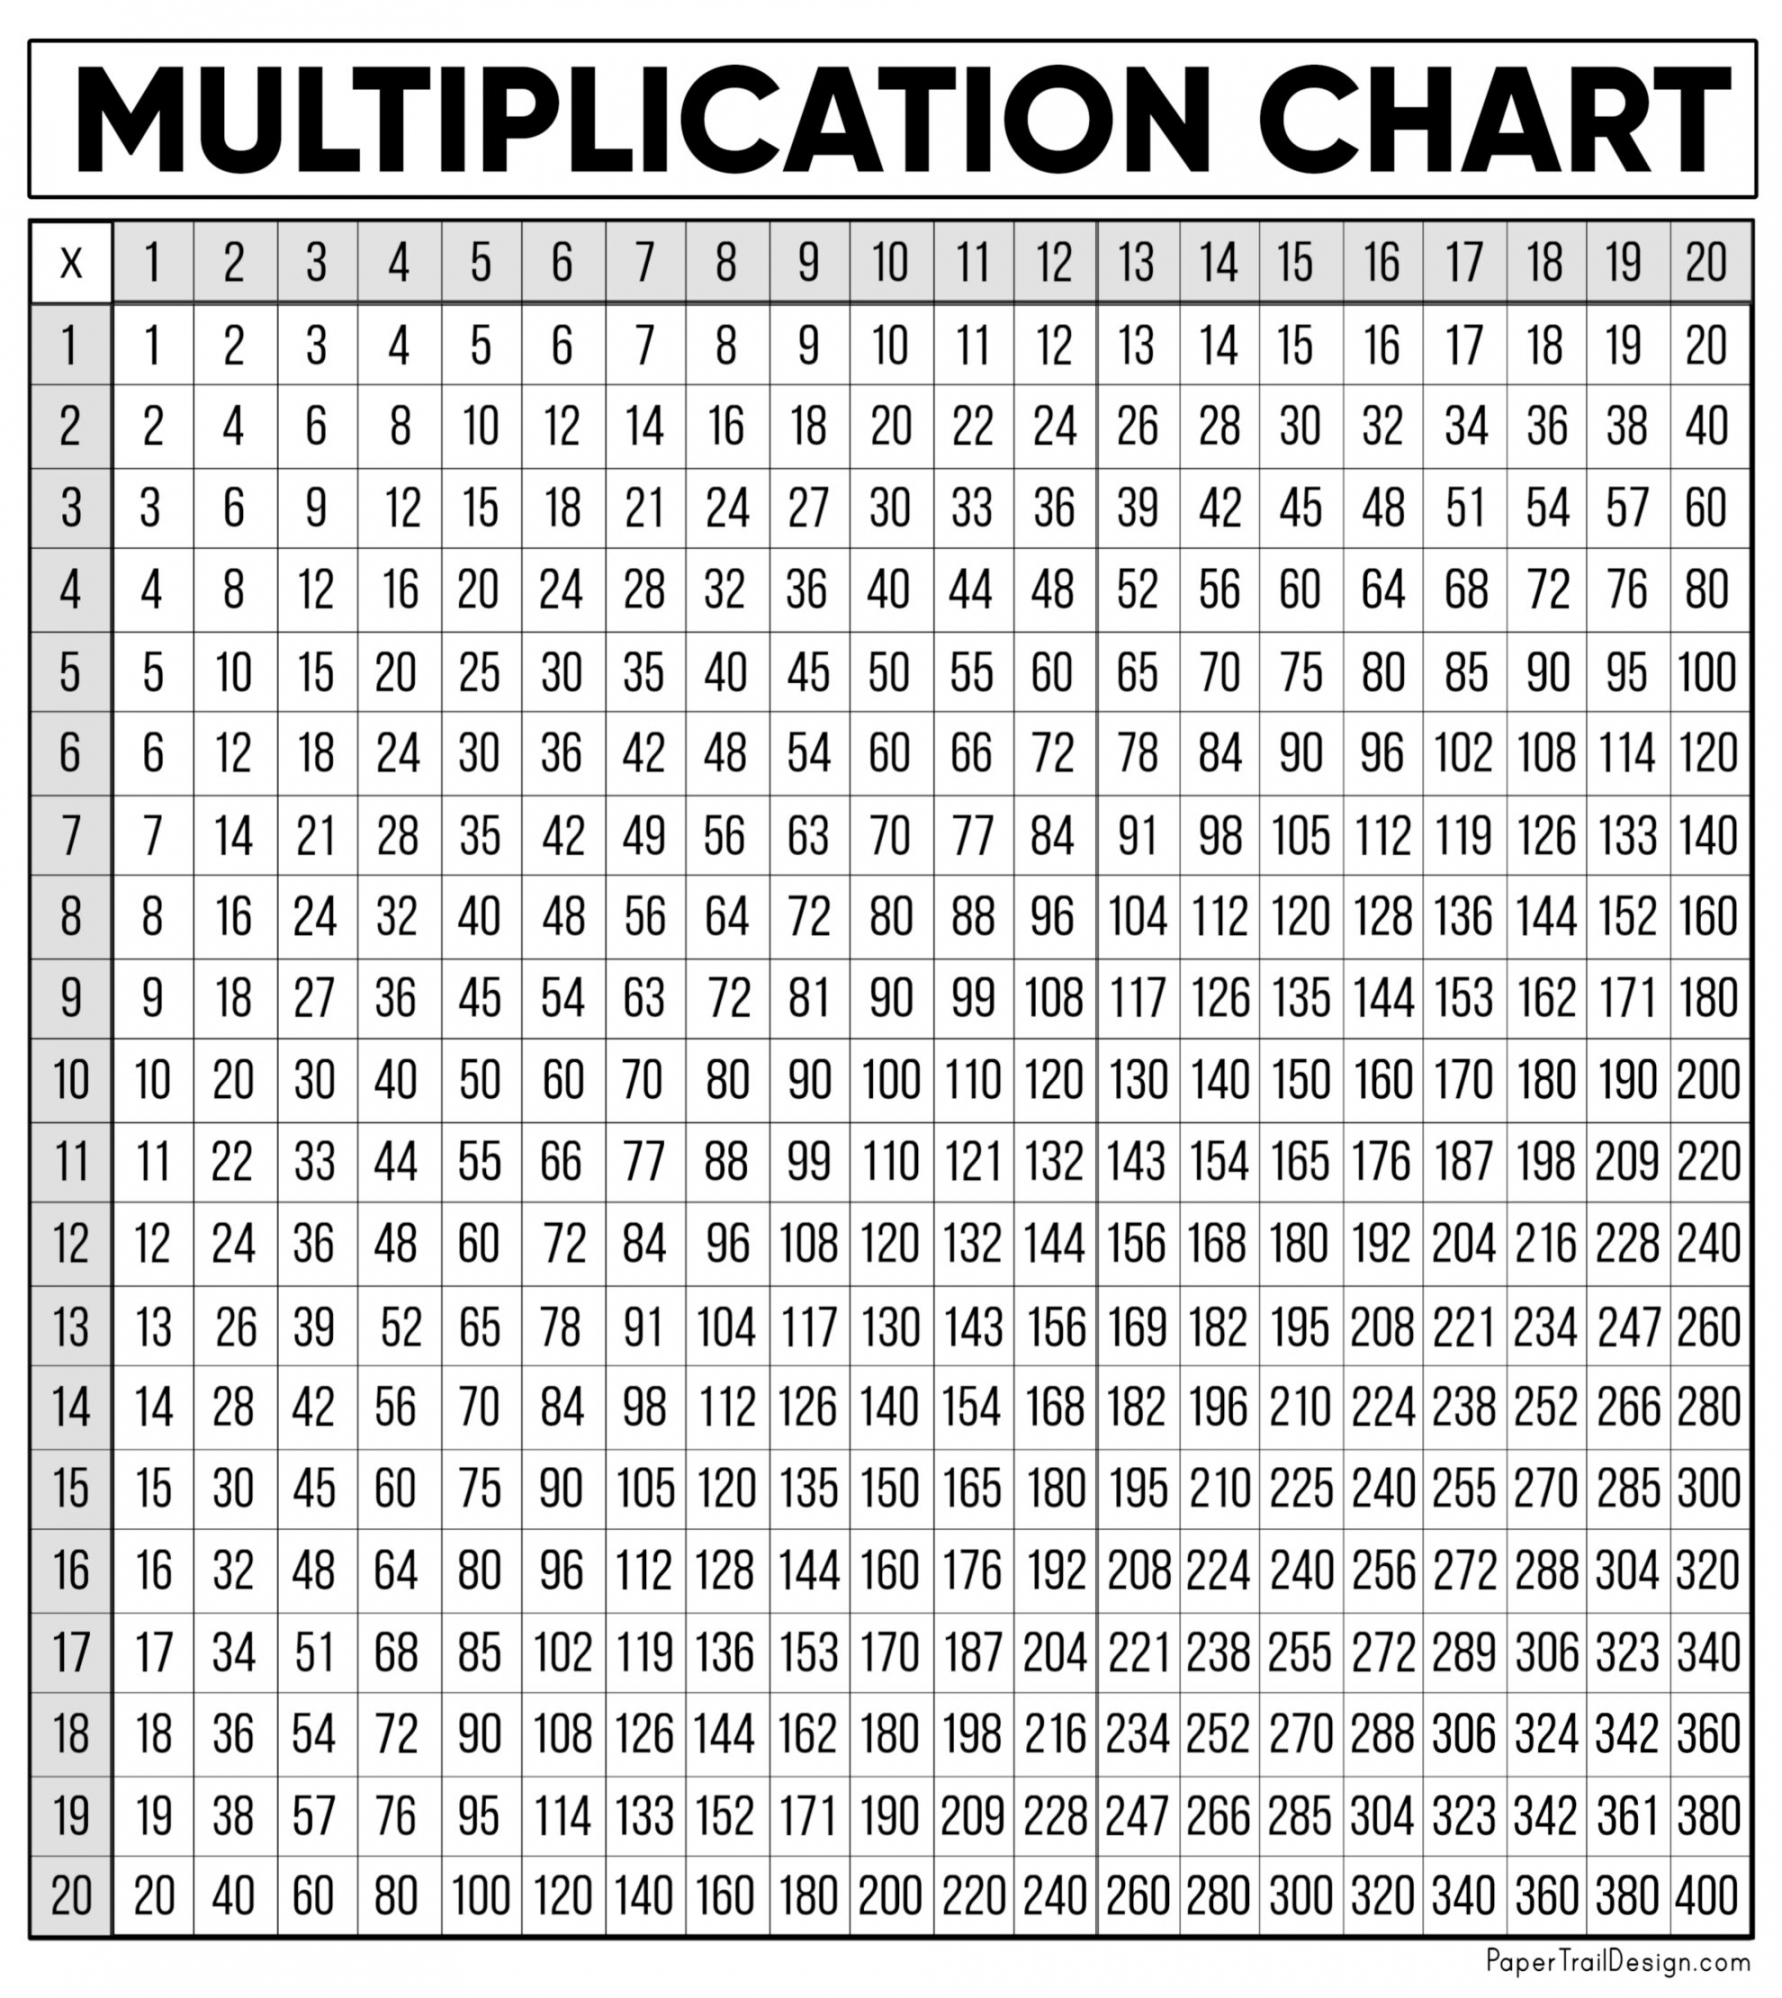 Multiplication Chart Free Printable - Printable - Free Multiplication Chart Printable - Paper Trail Design